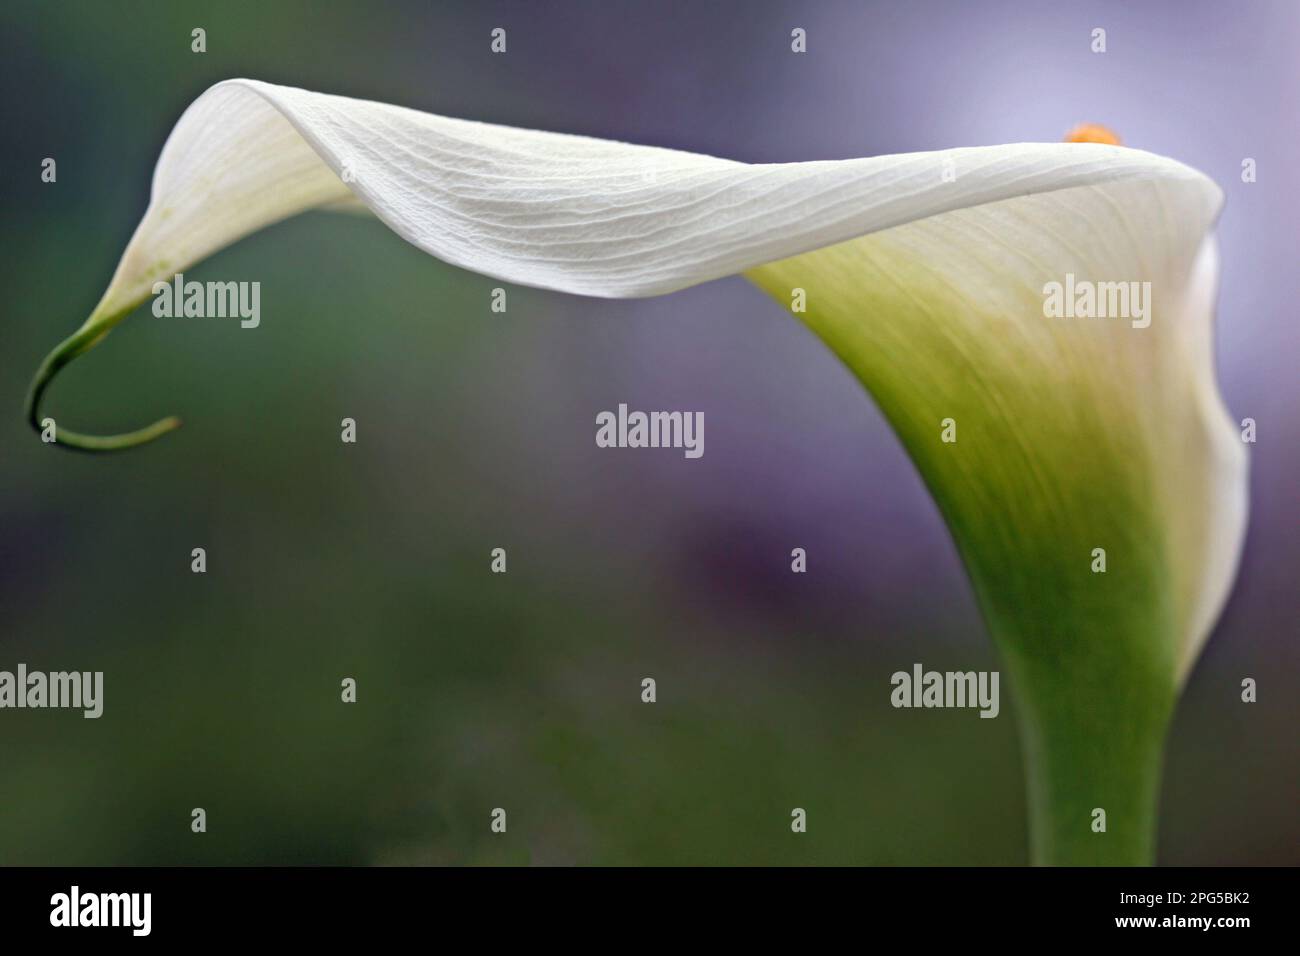 Immagine macro full frame di un giglio Calla bianco (Zantedeschia) con la curva del fiore a forma di lancia (spathe) e la sommità della spadix gialla Foto Stock